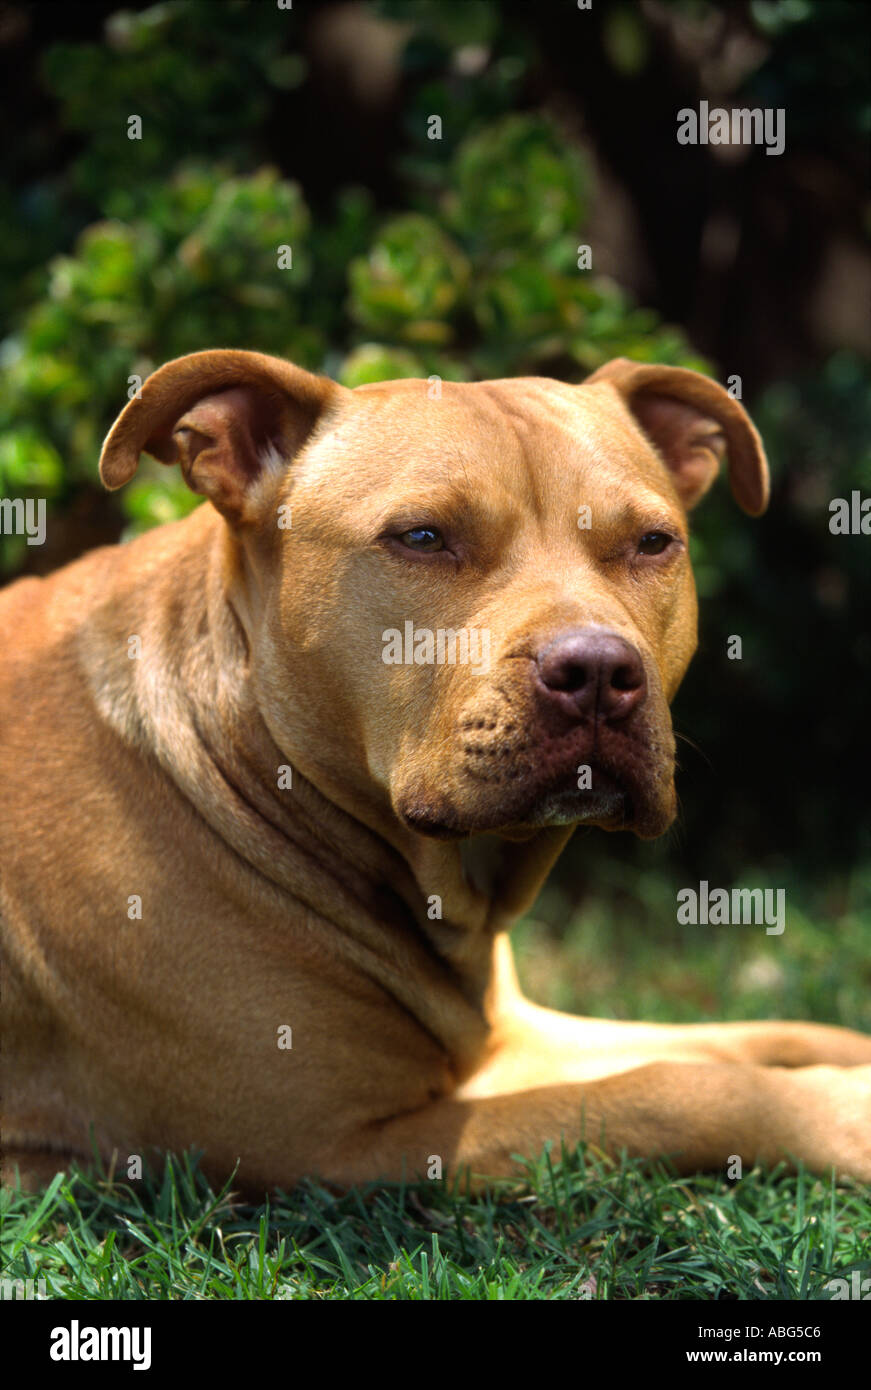 pitt bull terrier dog Stock Photo